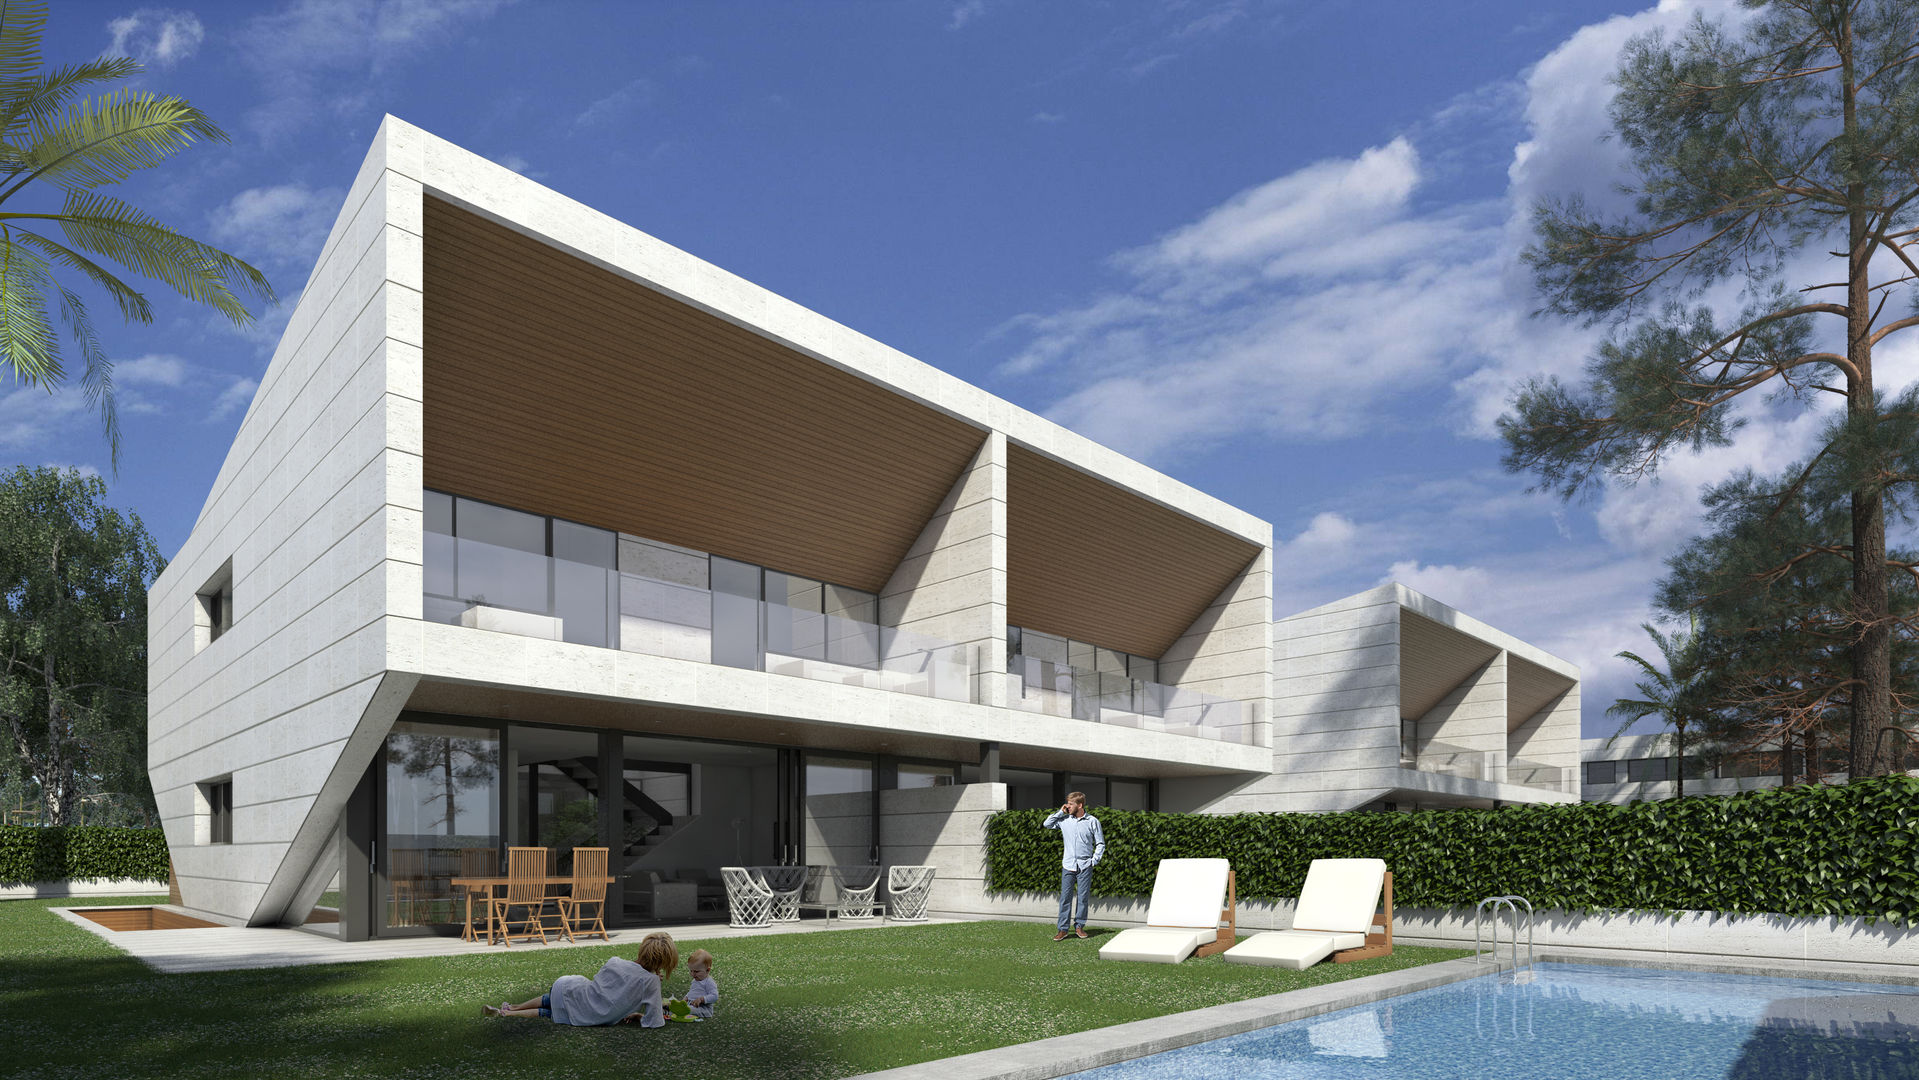 Promoción viviendas pareadas, ARQZONE 3D+Design Studio ARQZONE 3D+Design Studio Moderne huizen Kalksteen